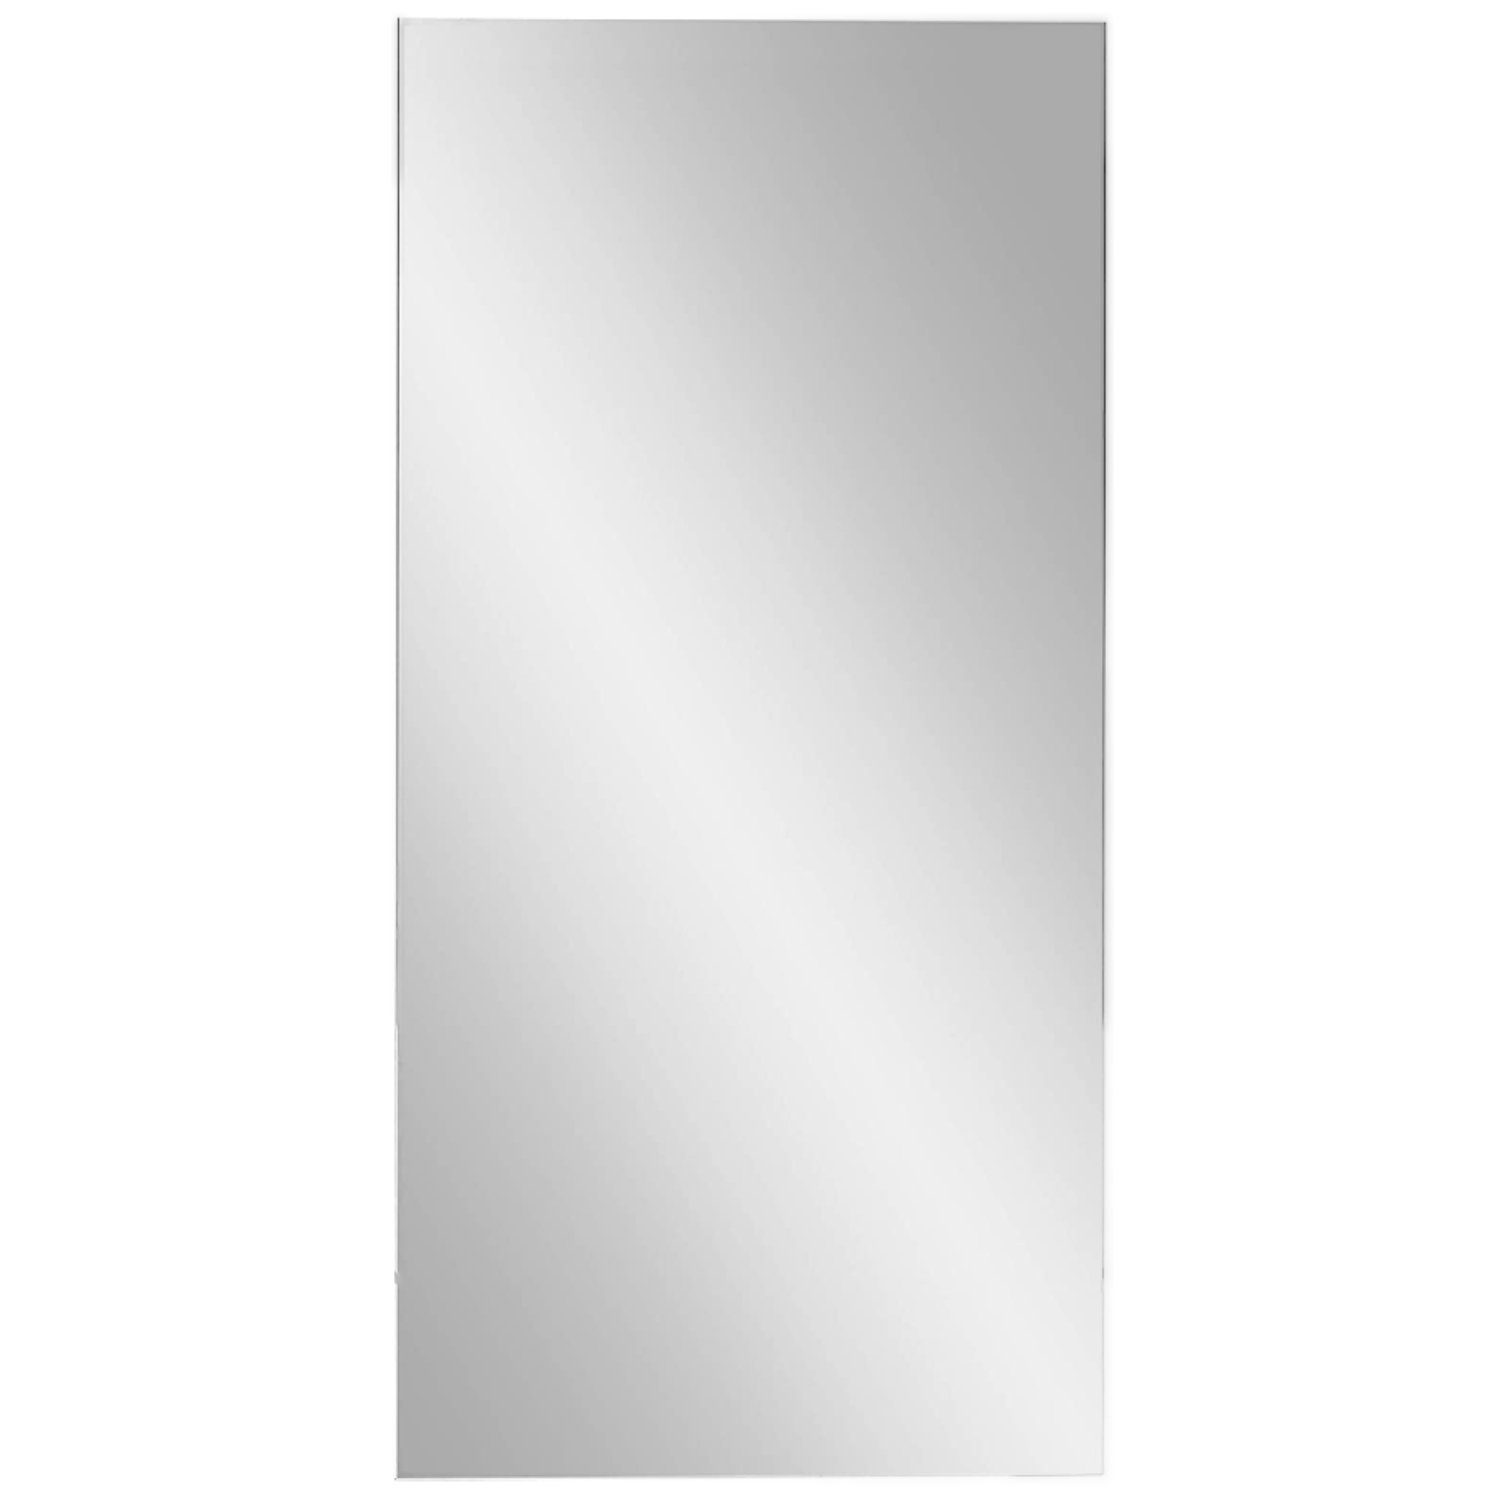 kalb Badspiegel Klassik Spiegel 80x40 cm platingrau mit Wandhalterung  Badspiegel